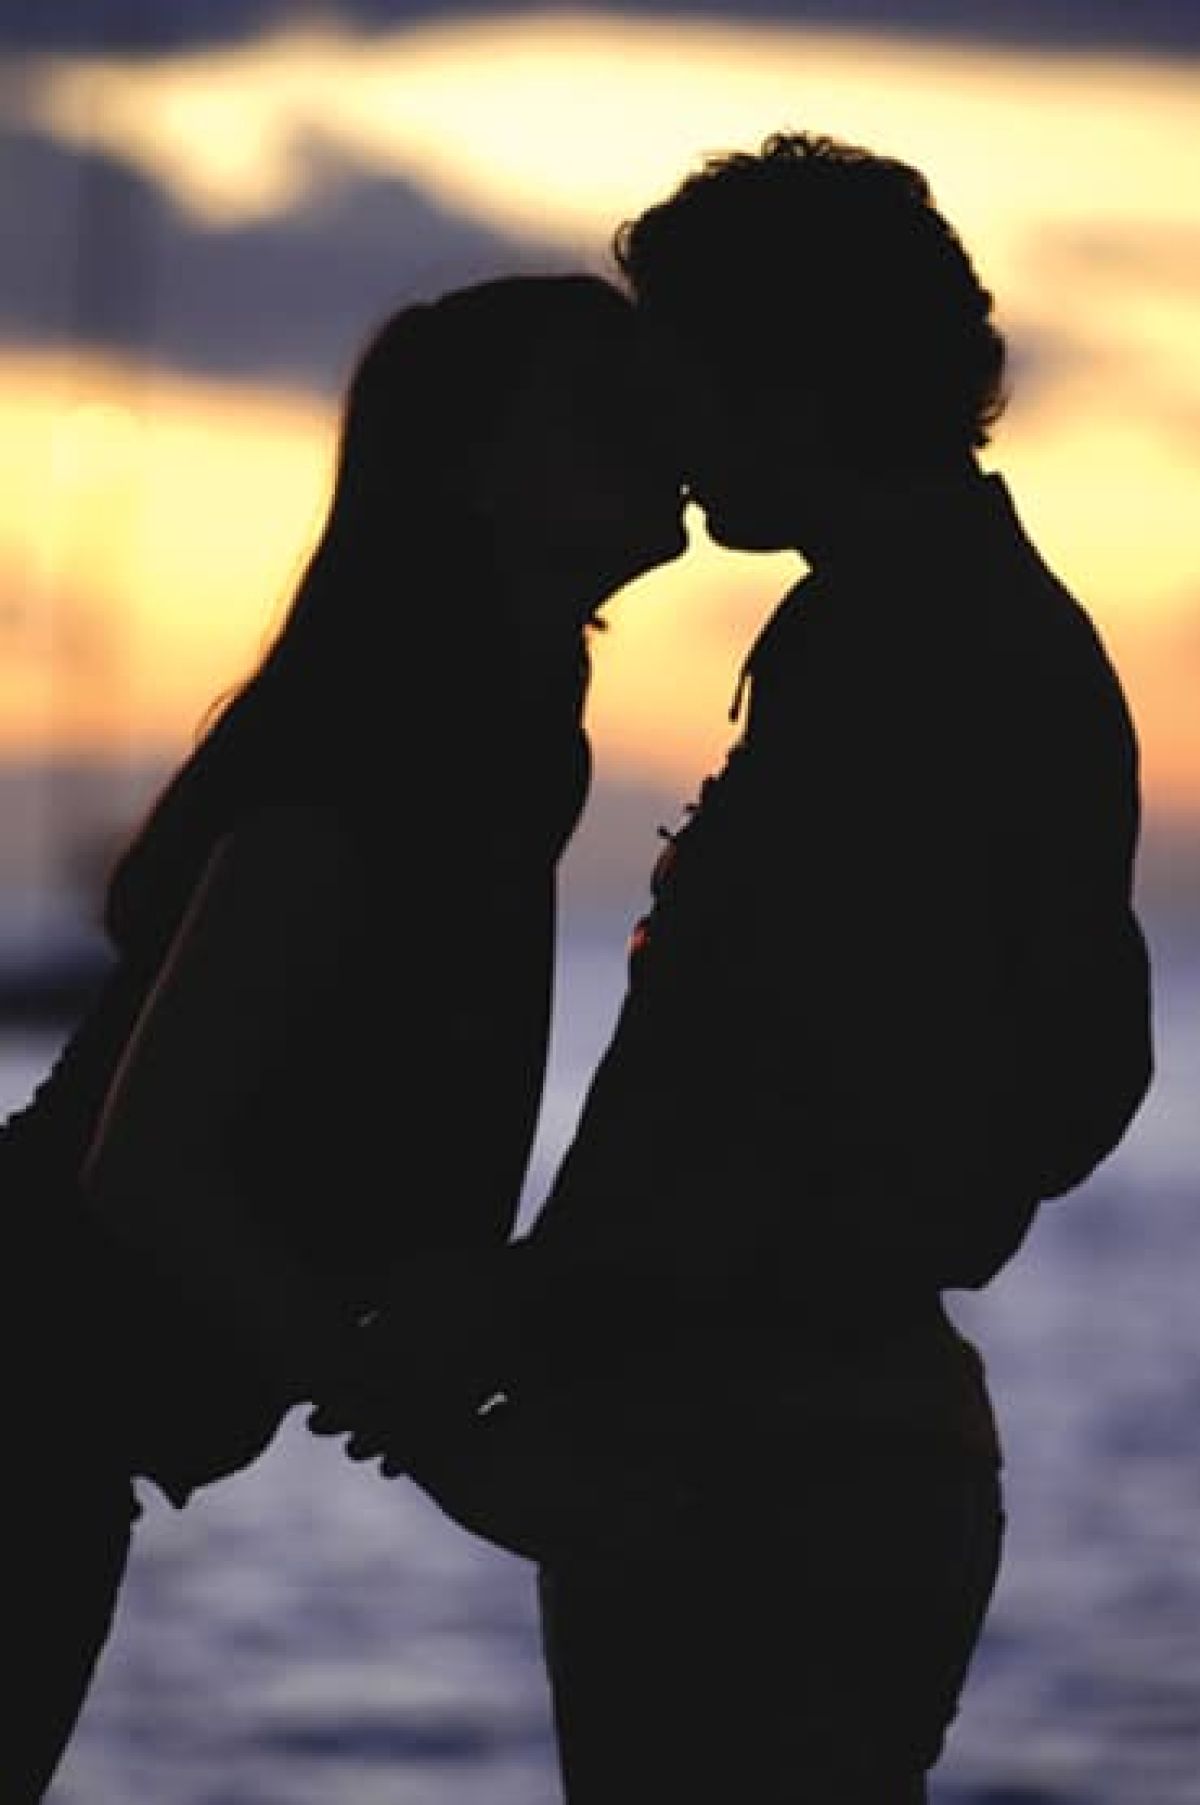 Le donne percepiscono nei baci una maggior intimità che non nell’atto sessuale vero e proprio.